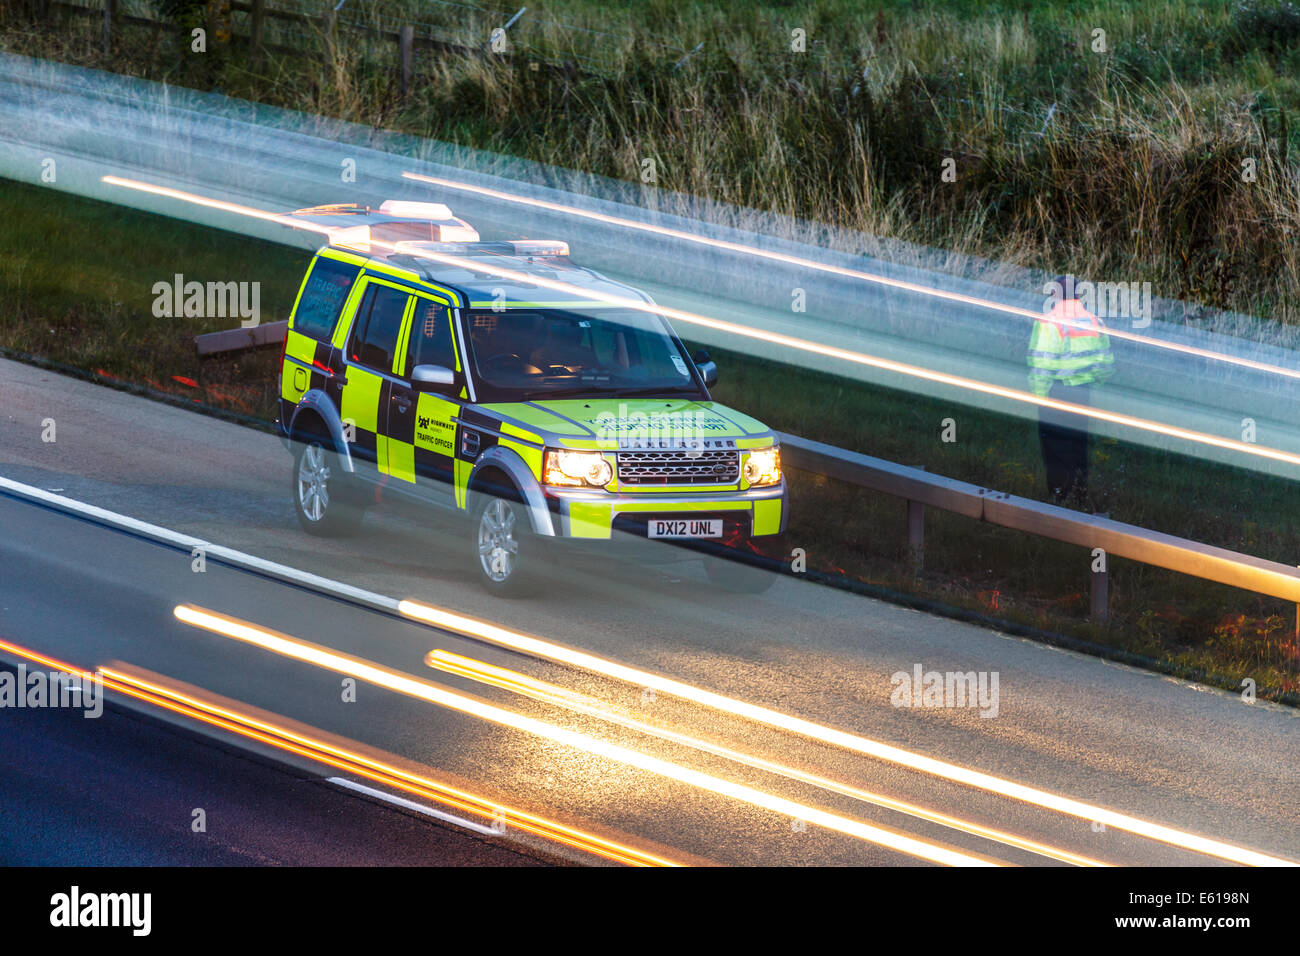 Un véhicule landrover Highways Agency assiste à la scène d'un incident de trafic sur une autoroute britannique au crépuscule. Banque D'Images